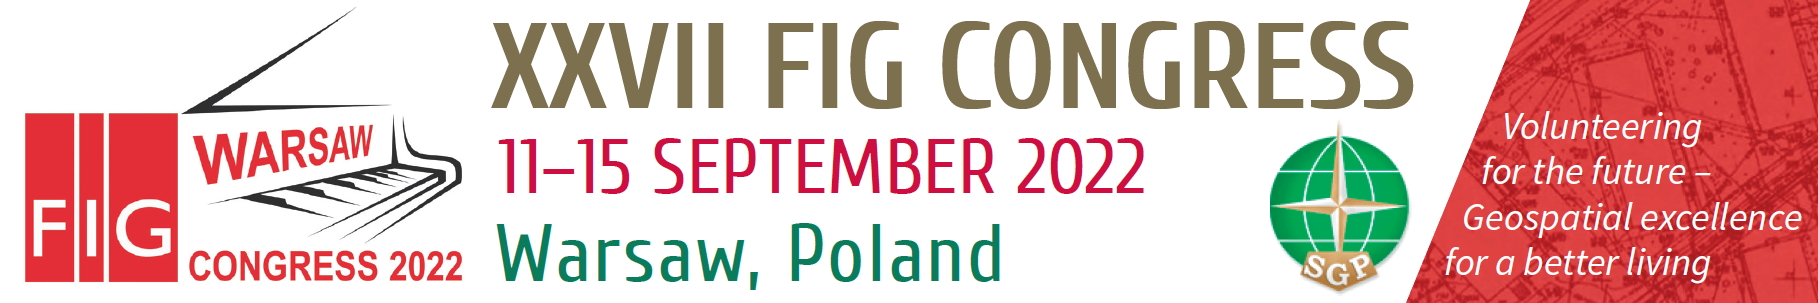 Kongres FIG 2022 w Warszawie